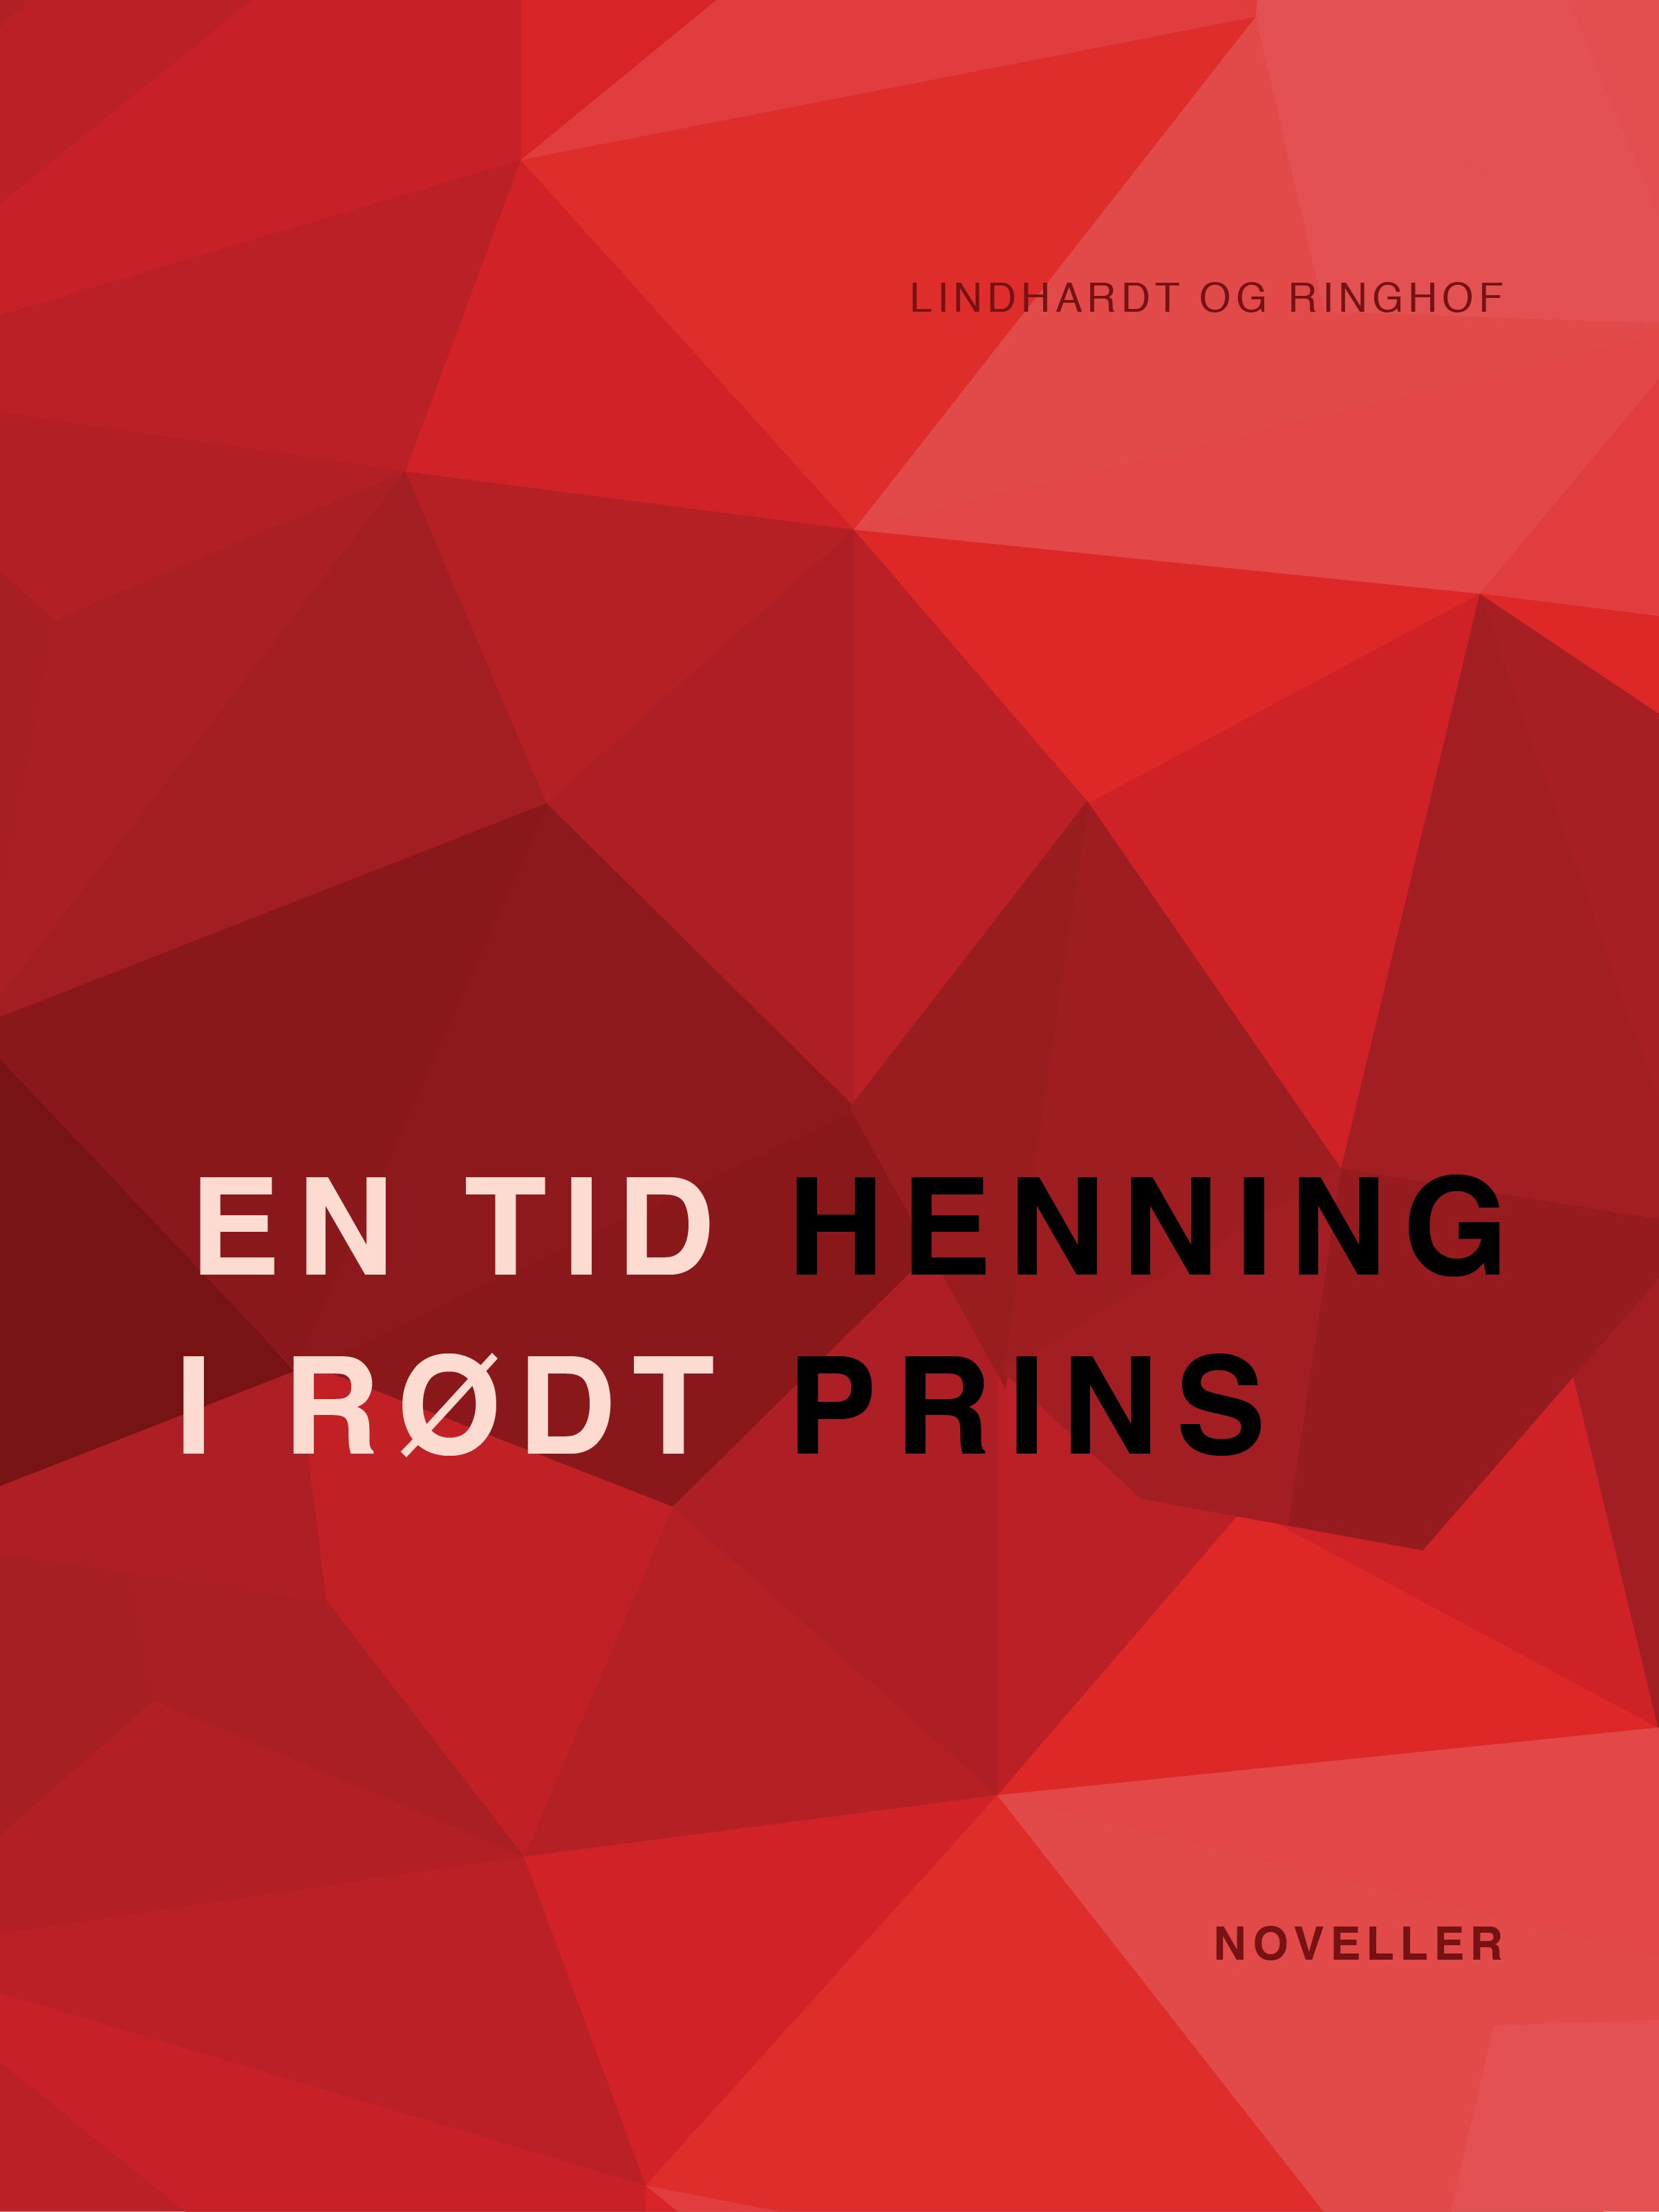 En tid i rødt, audiobook by Henning Prins